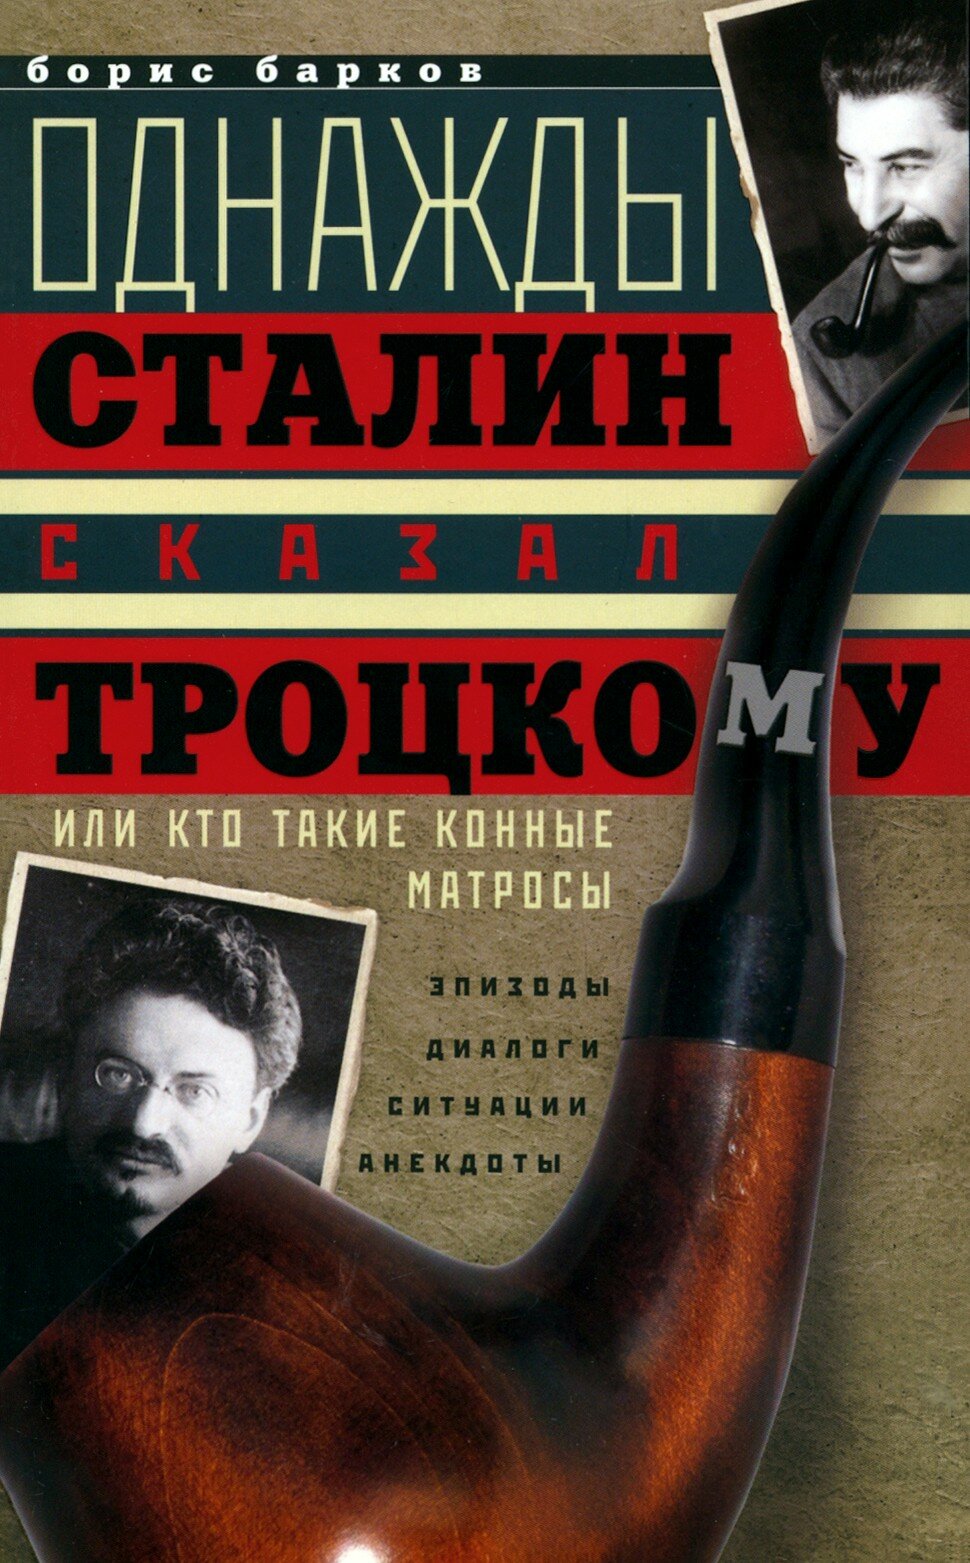 Однажды Сталин сказал Троцкому, или Кто такие конные матросы - фото №2